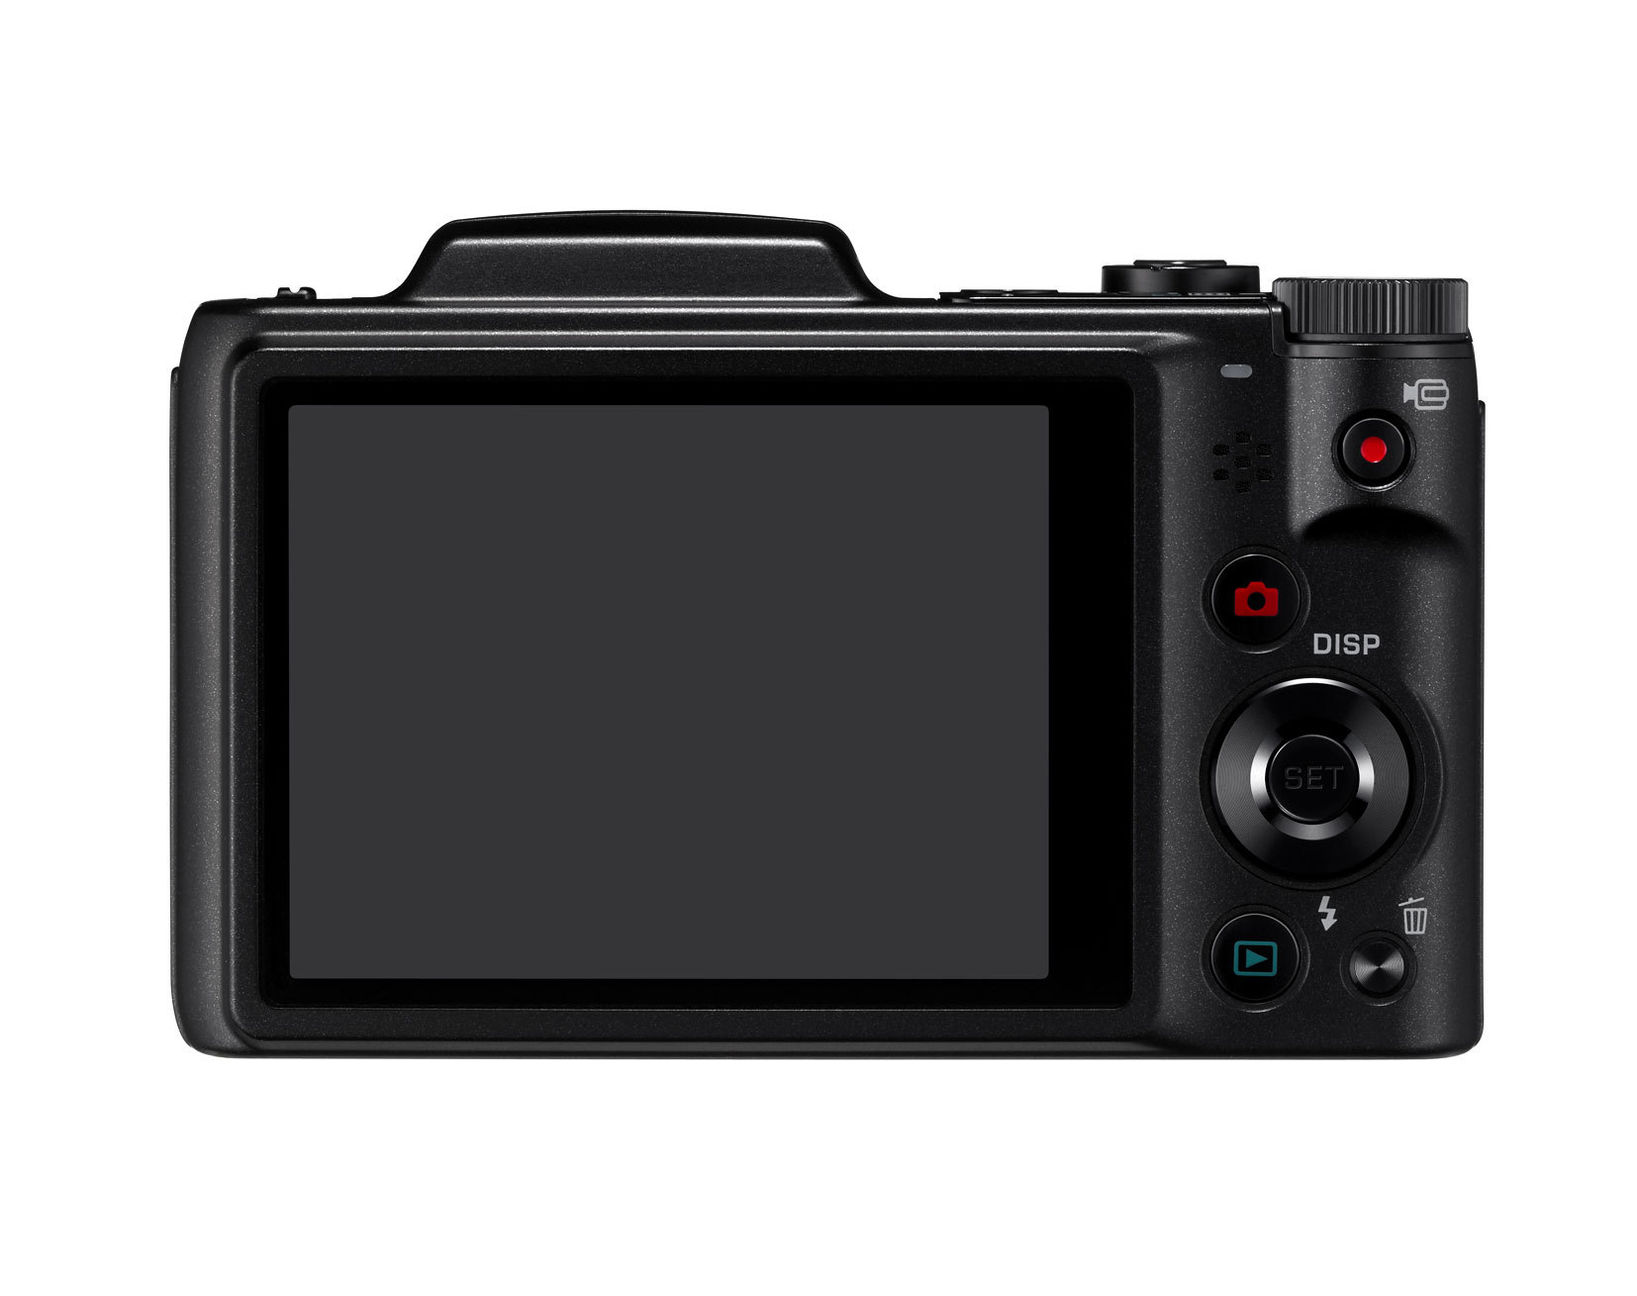 Casio Digitalkamera EX-ZS200 Farbe: schwarz | Weltbild.de